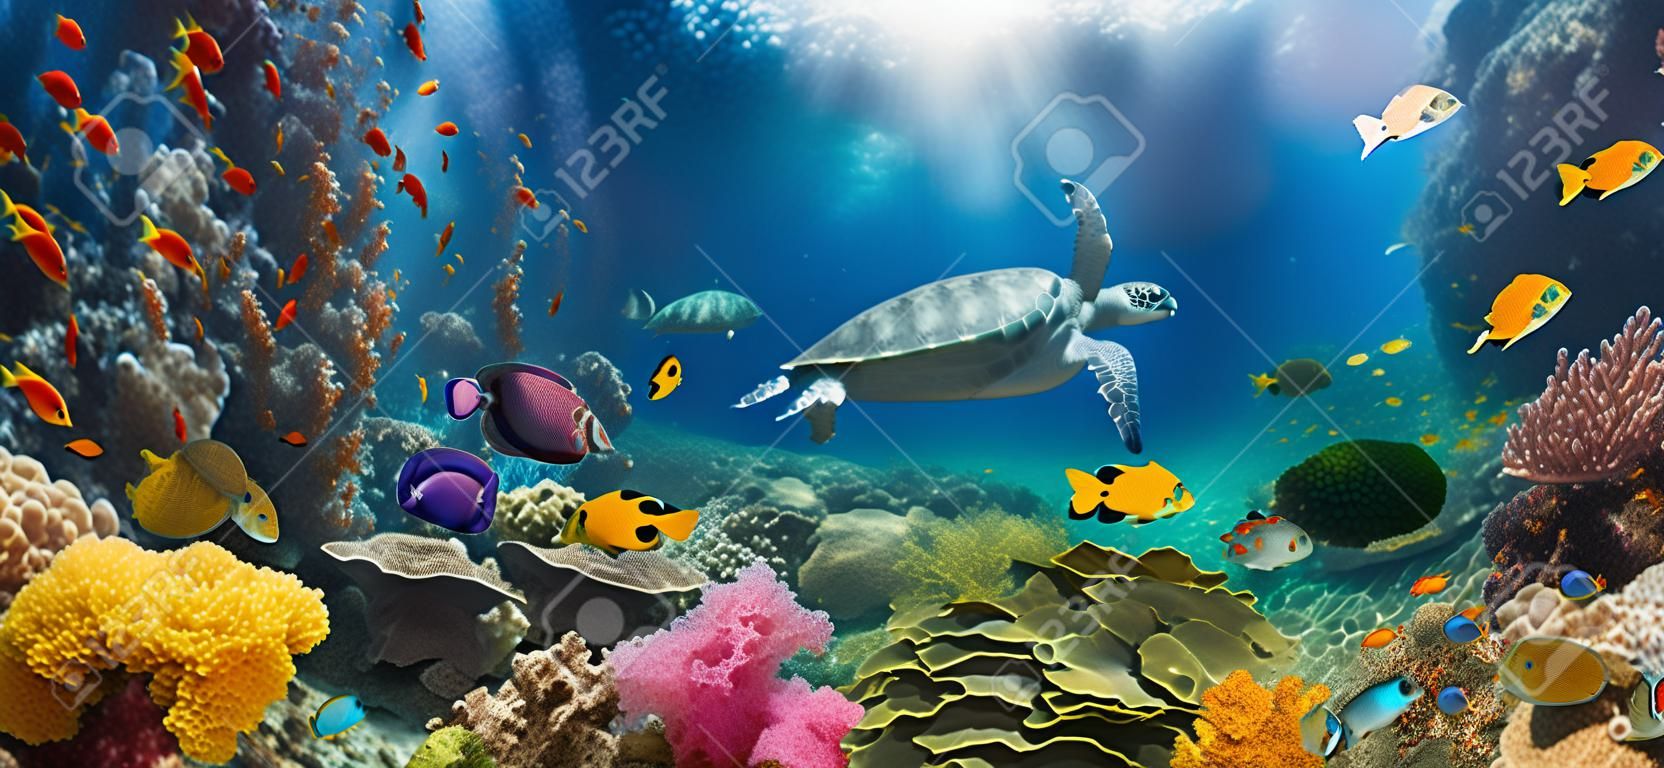 Unterwasserparadies-Hintergrund - Korallenriff-Tierwelt-Naturcollage mit Meeresschildkröte und buntem Fischhintergrund